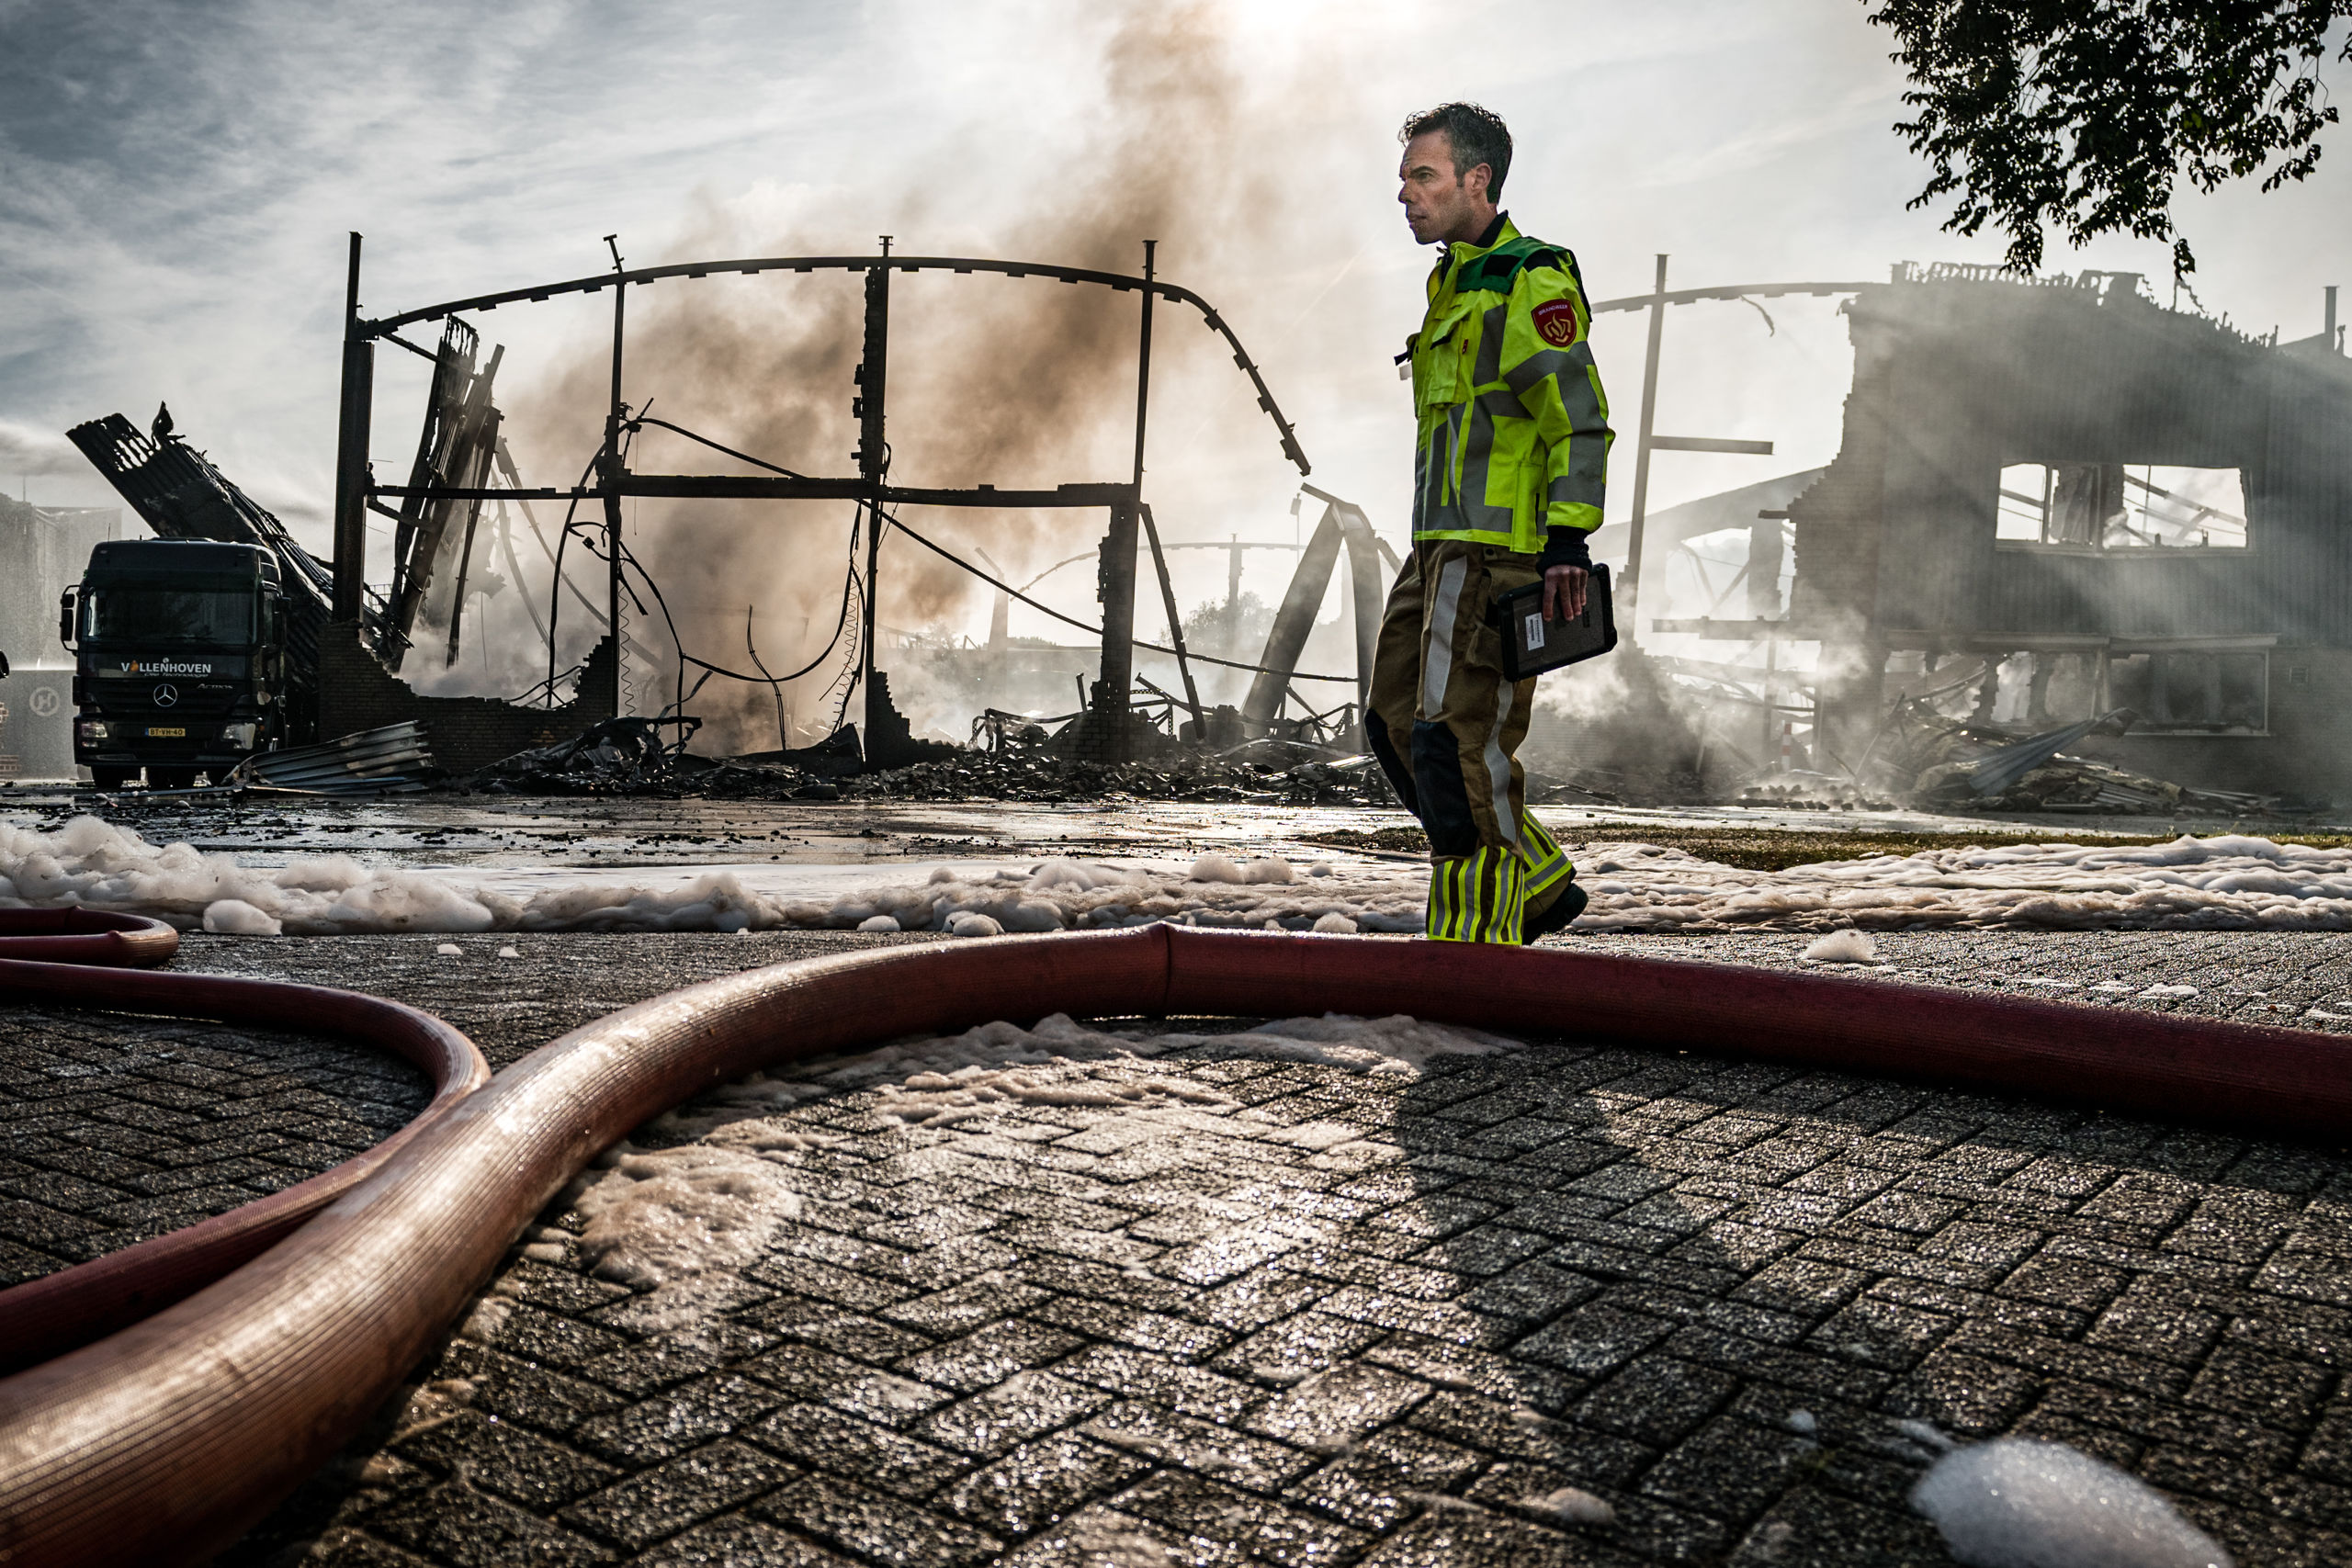 Op een industrieterrein aan de Zevenheuvelenweg in Tilburg woedt een grote brand. De brand is ontstaan in een bakkerij, waarna het oversloeg naar omliggende panden.